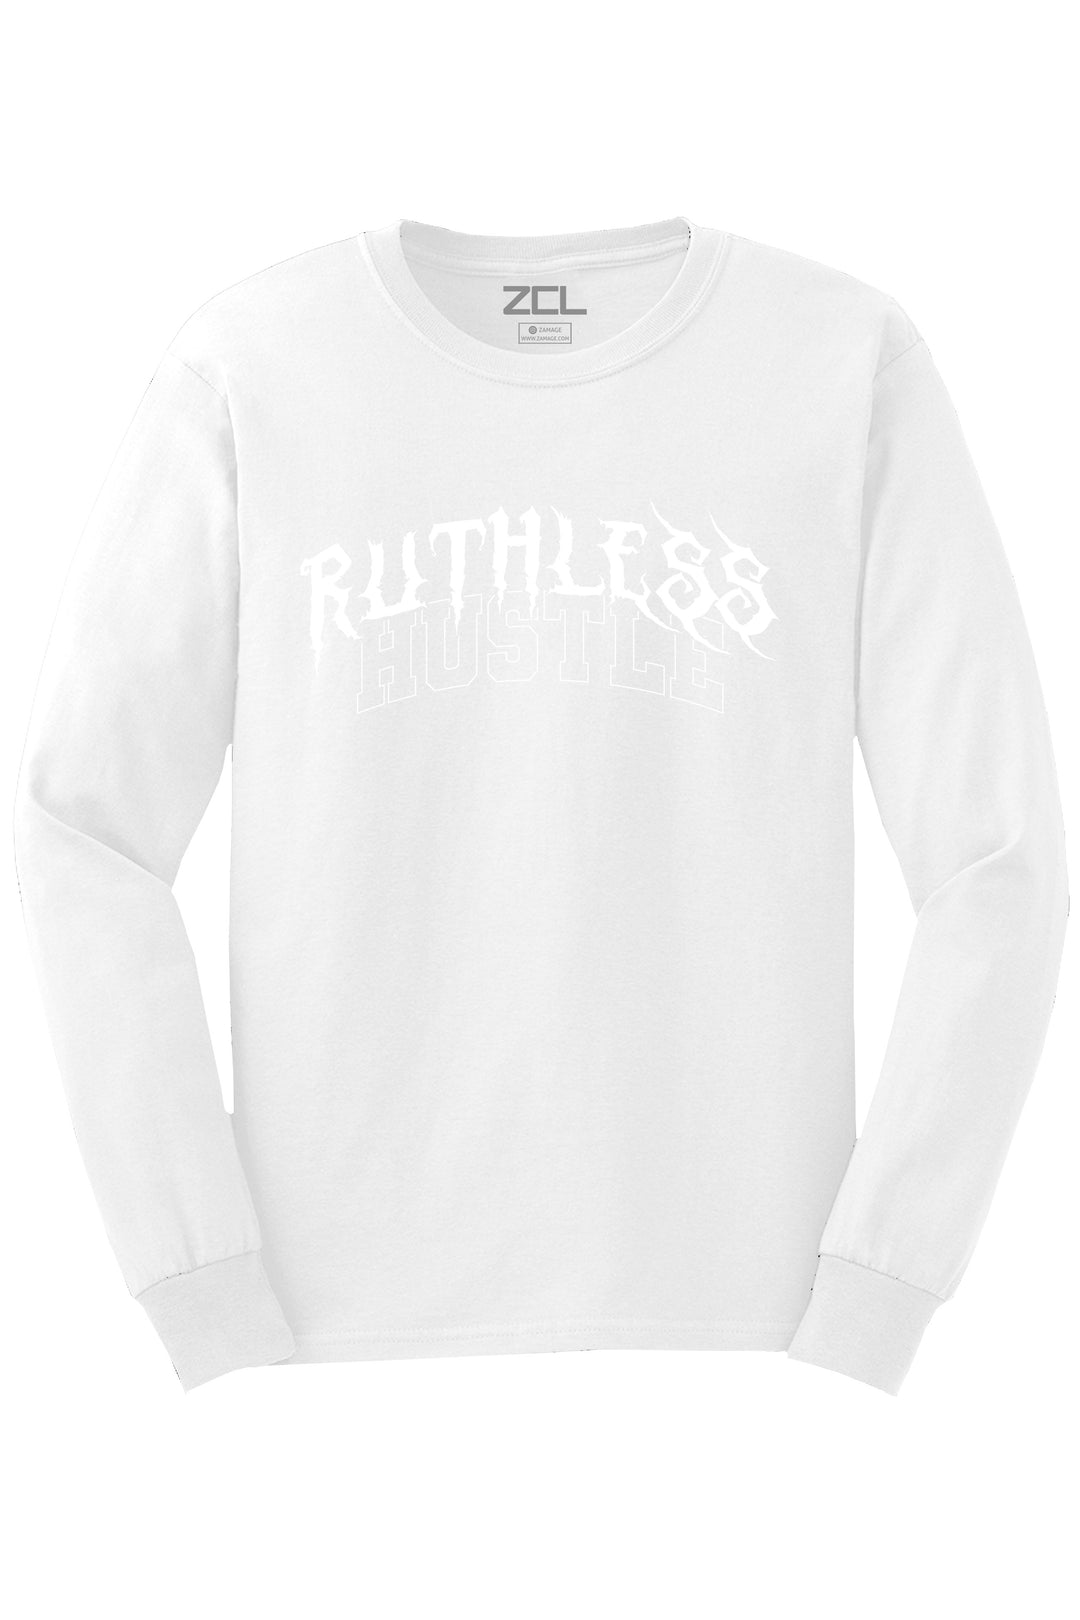 Ruthless Hustle Long Sleeve Tee (White Logo) - Zamage